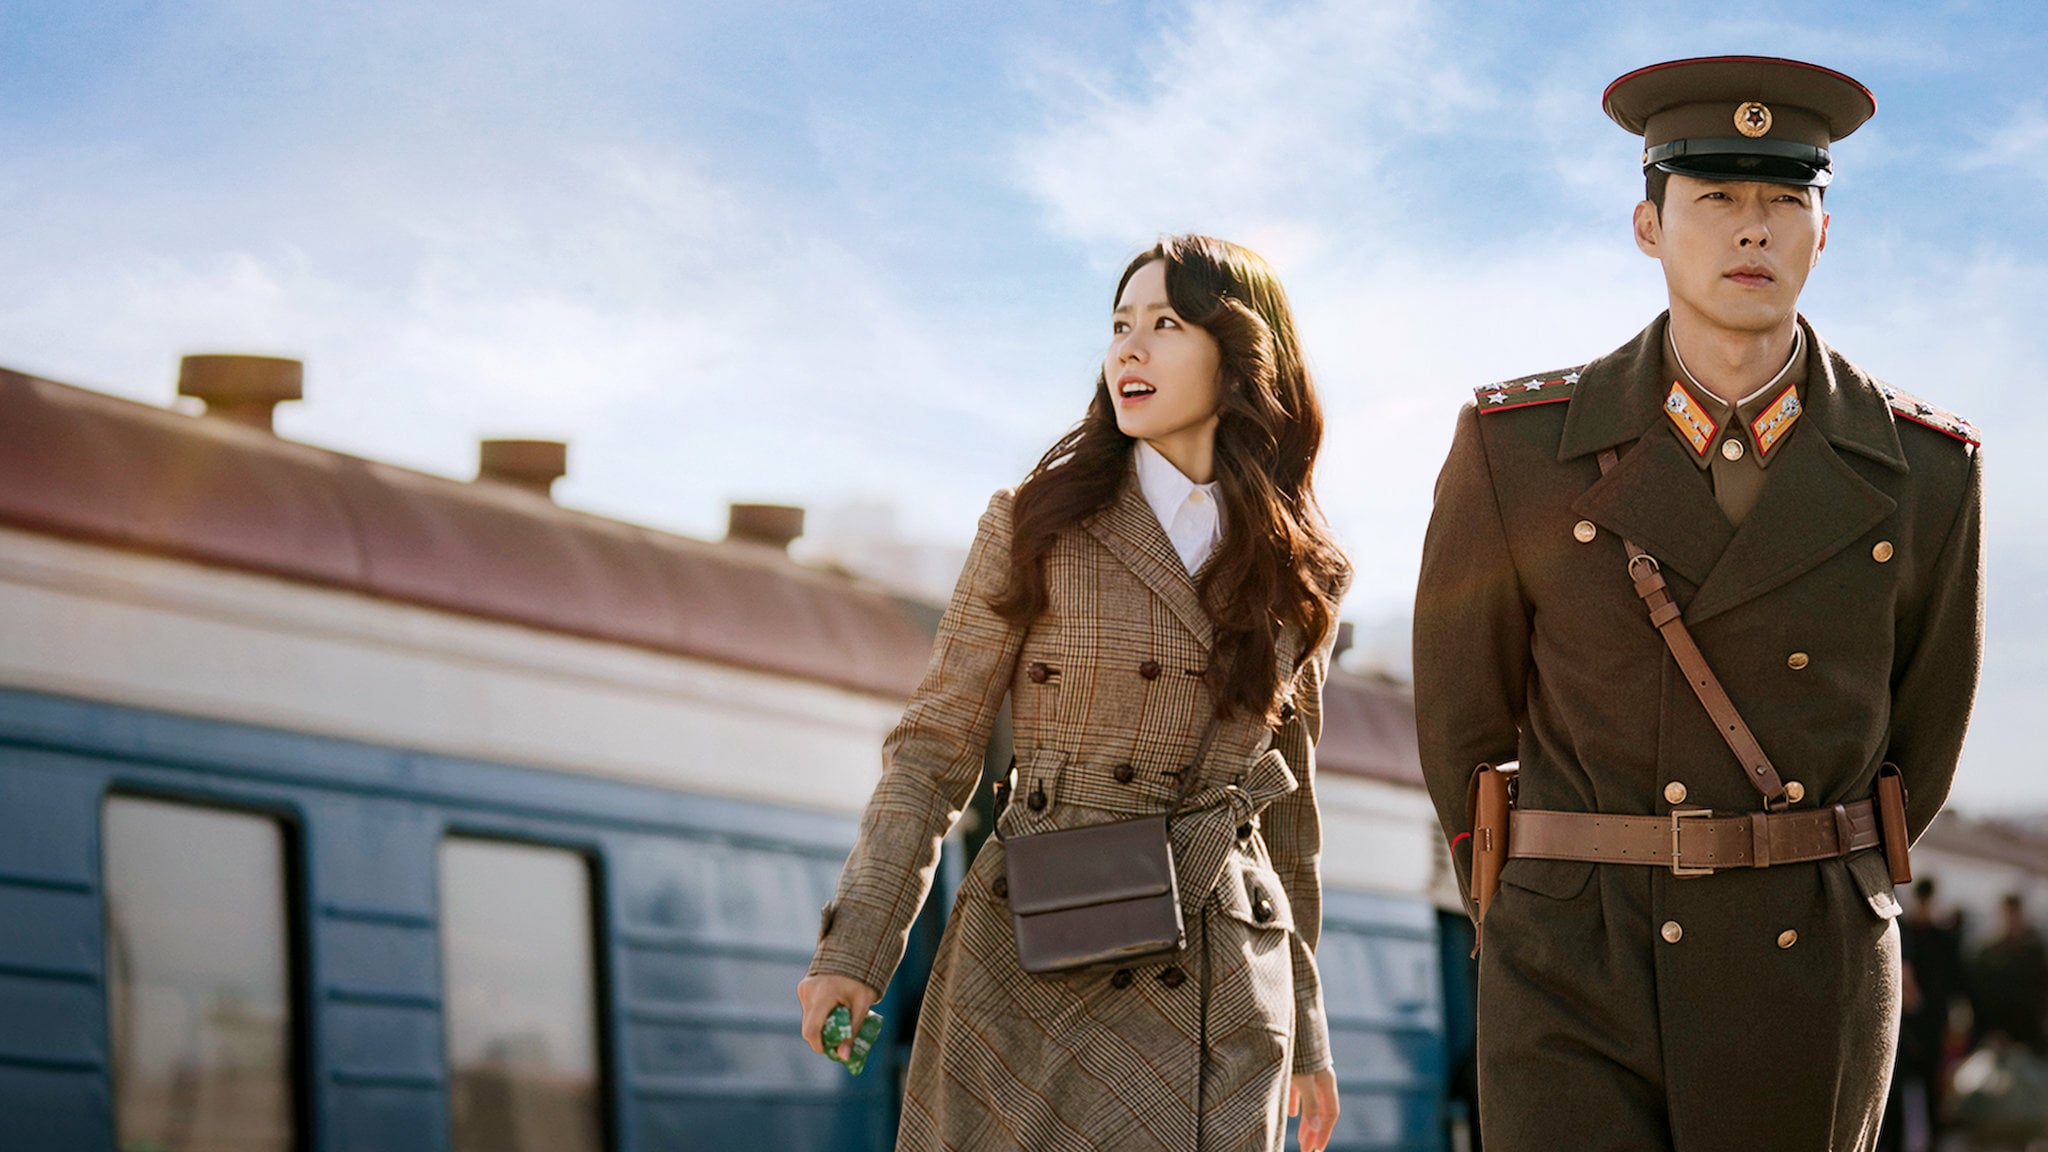 De mutantes a drama coreano: 7 filmes e séries para ver no